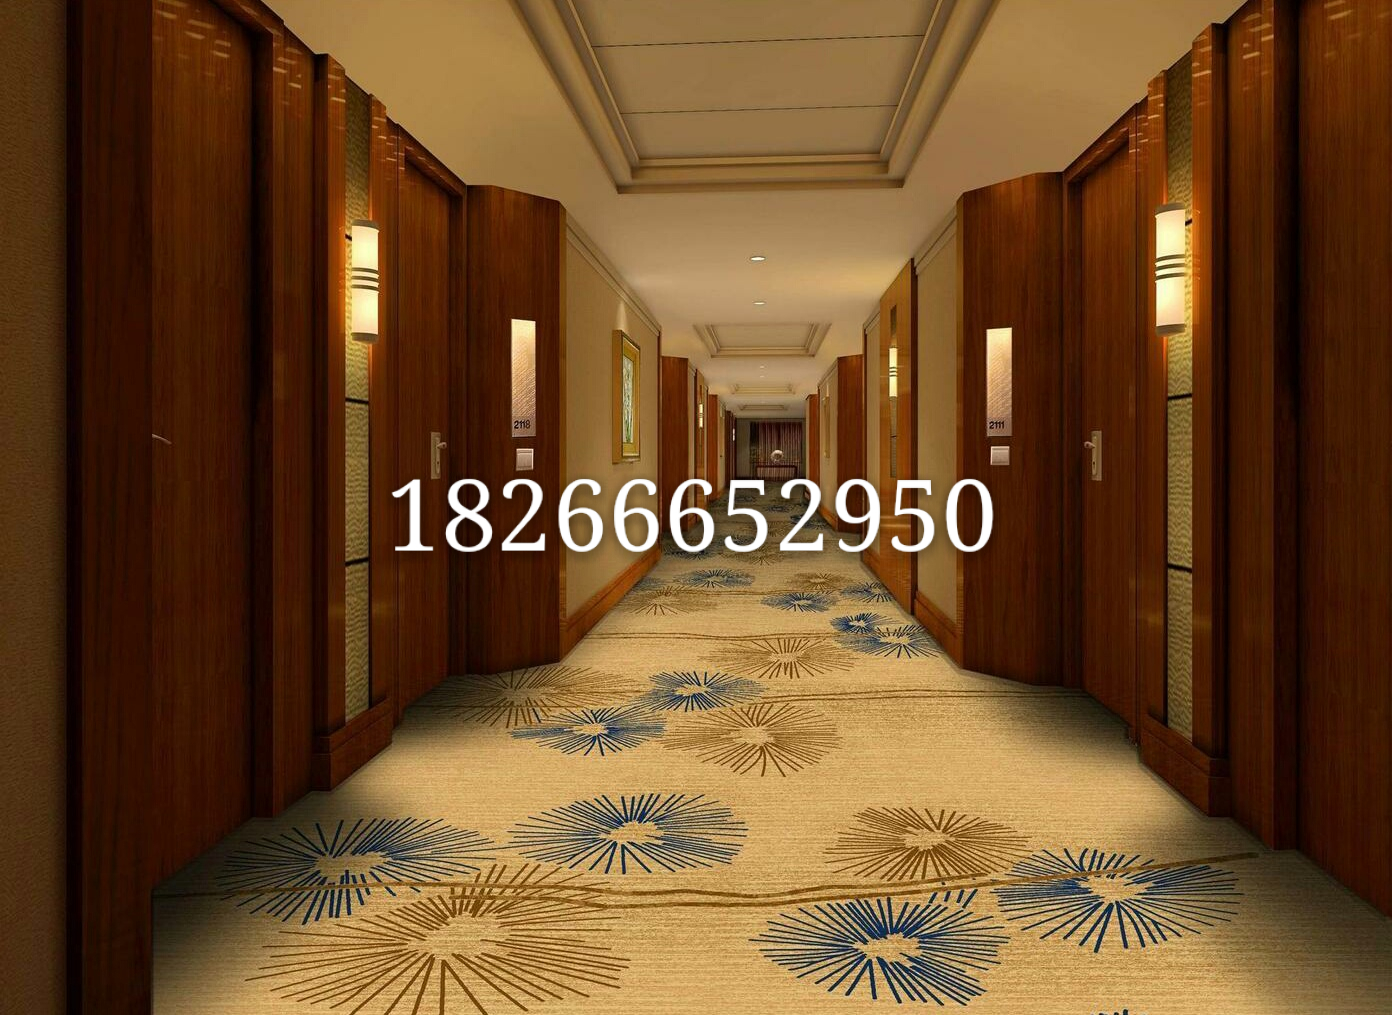 供应青岛宾馆酒店走廊地毯 青岛酒店地毯批发 青岛酒店地毯价格 青岛地毯商家 青岛酒店地毯哪里找